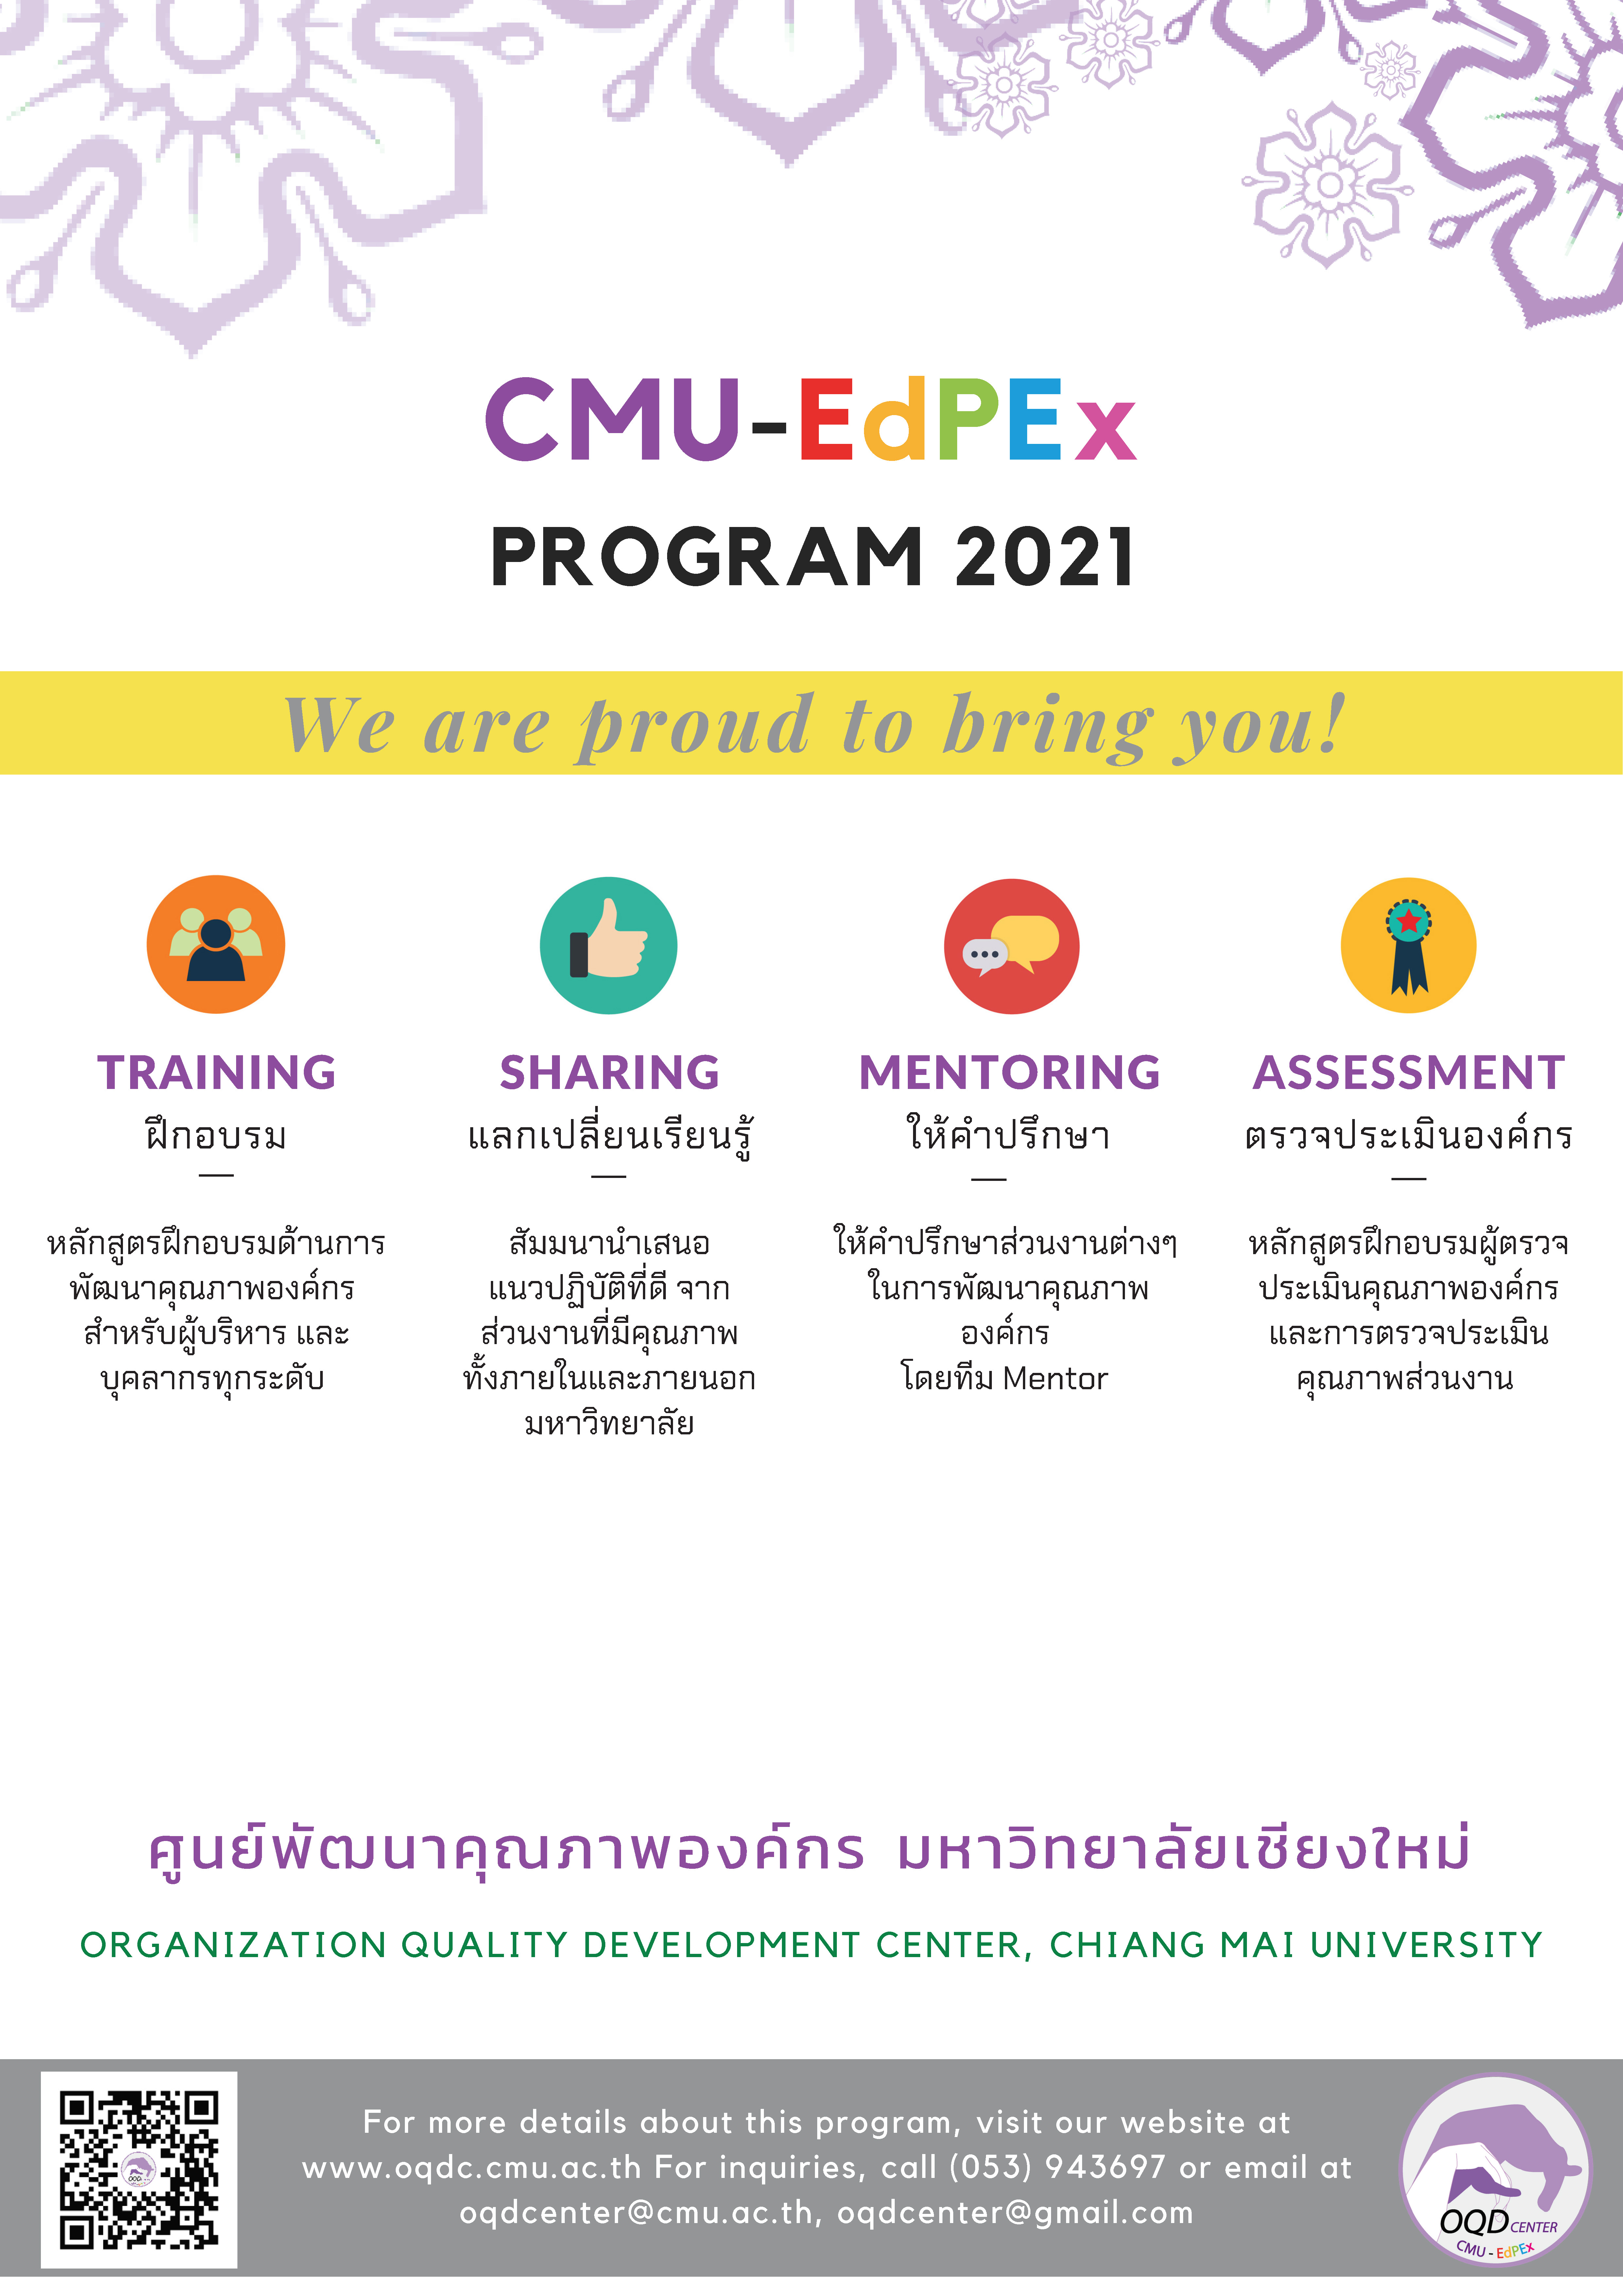 กิจกรรมการพัฒนาคุณภาพองค์กร ตามแผนการดำเนินงาน CMU-EdPEx ประจำปี 2564